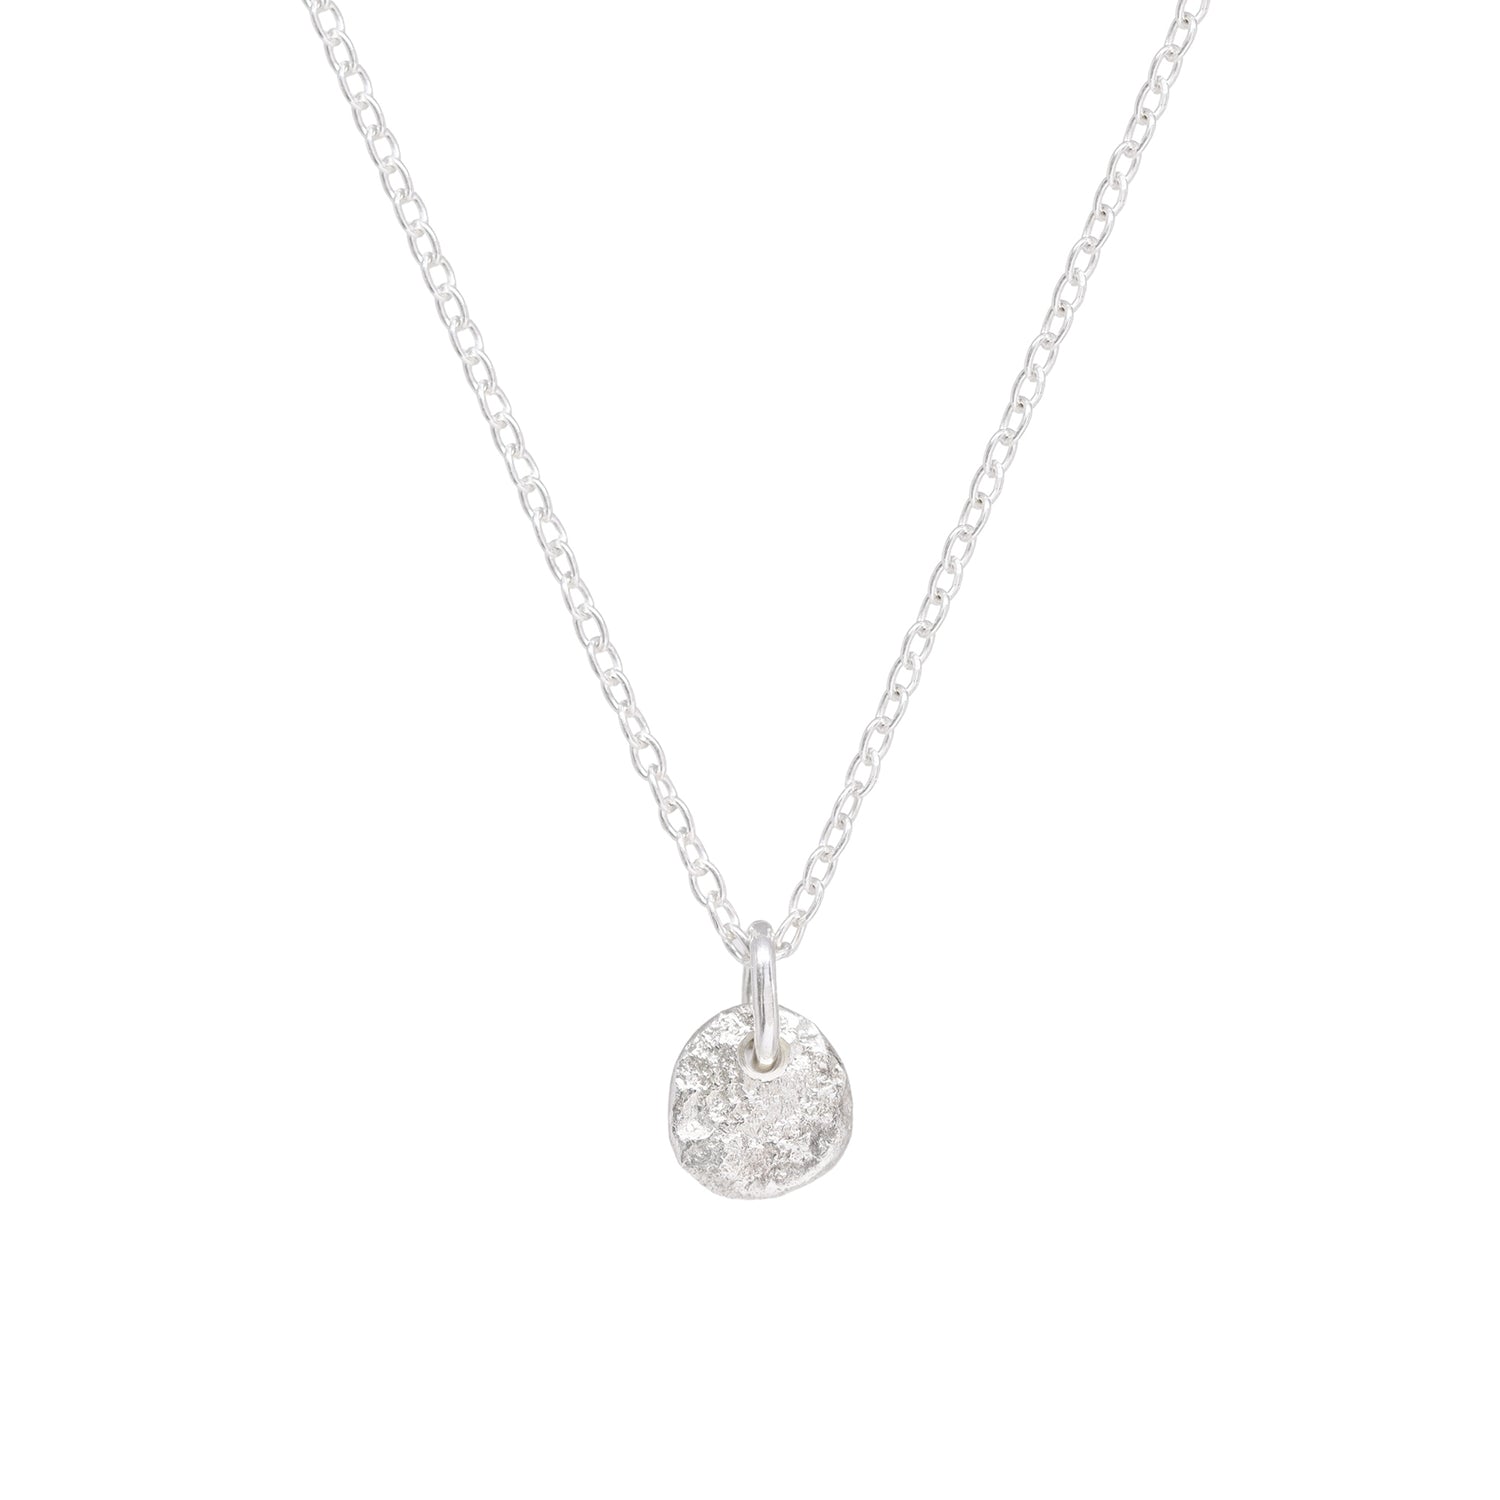 Luna Mini Pendant Necklace - Bright Sterling